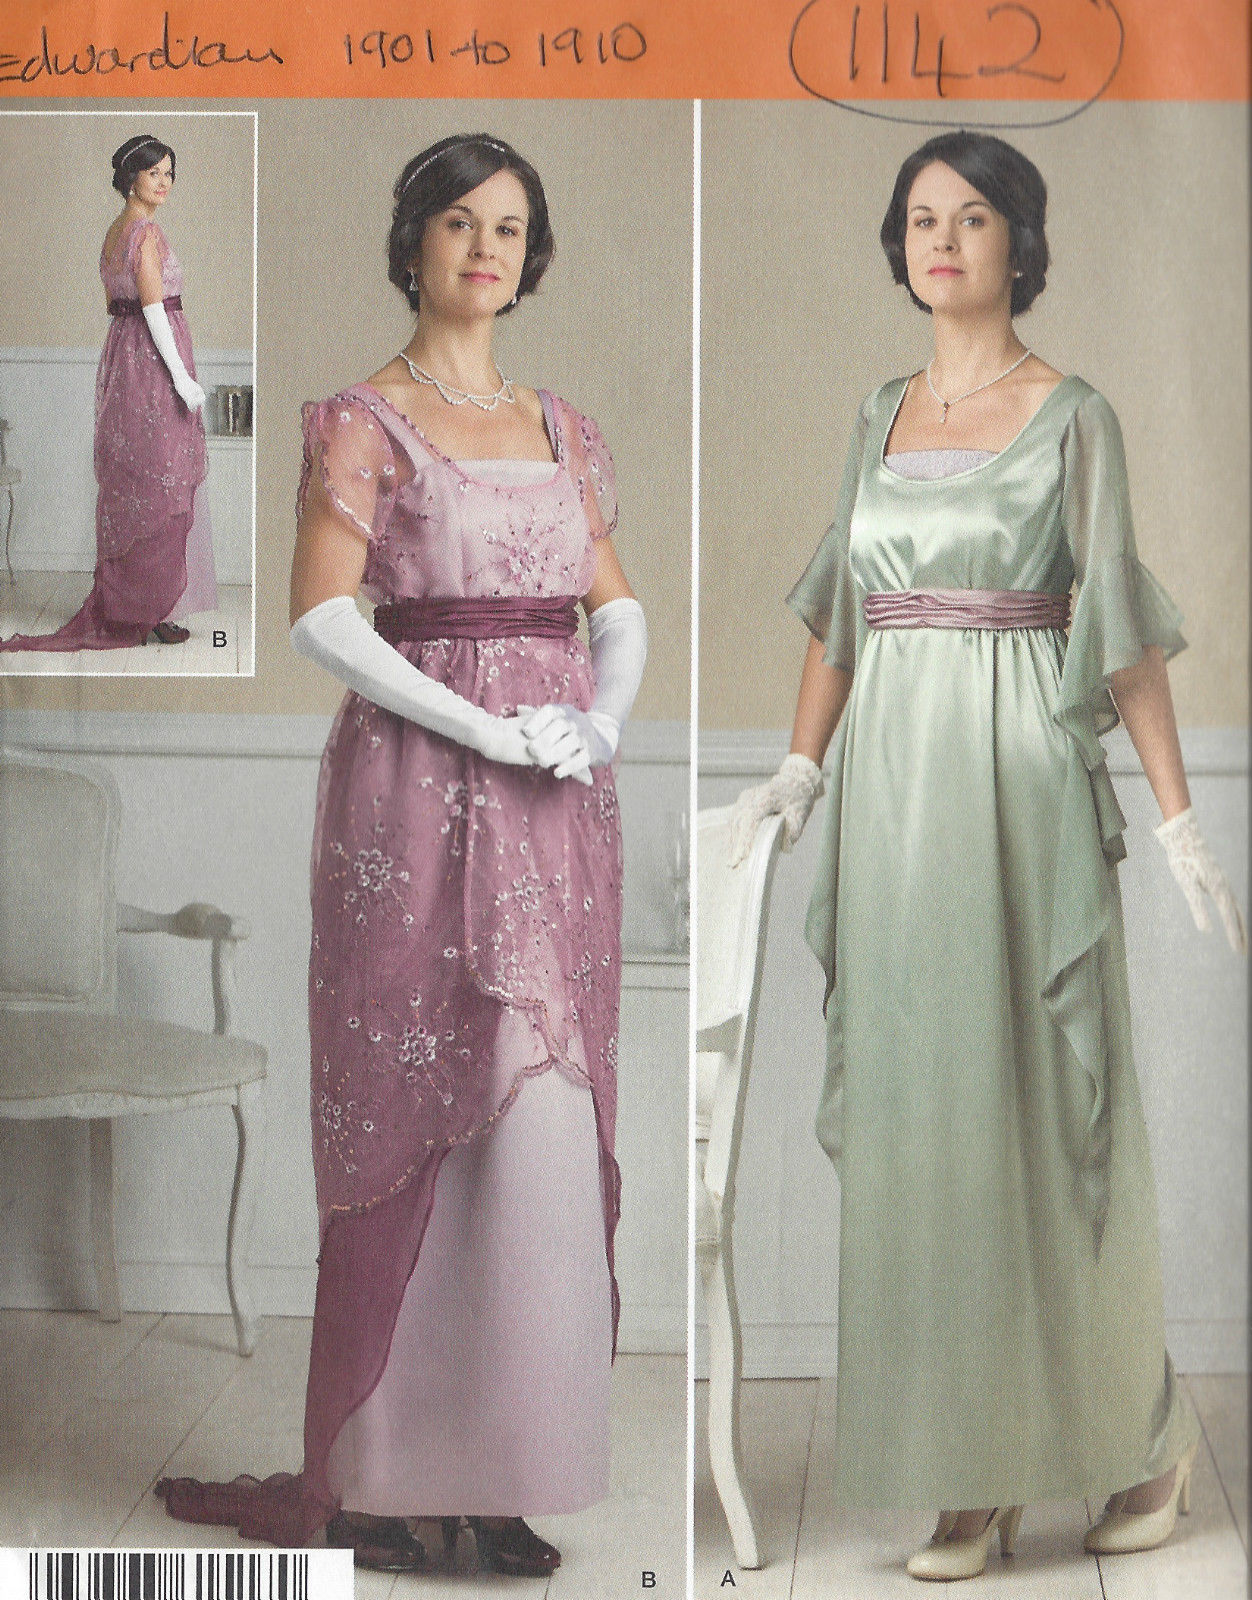 RARE Pat 1909 ANTIQUE H & W EDWARDIAN ladies DRESS CORSET SIZE 24